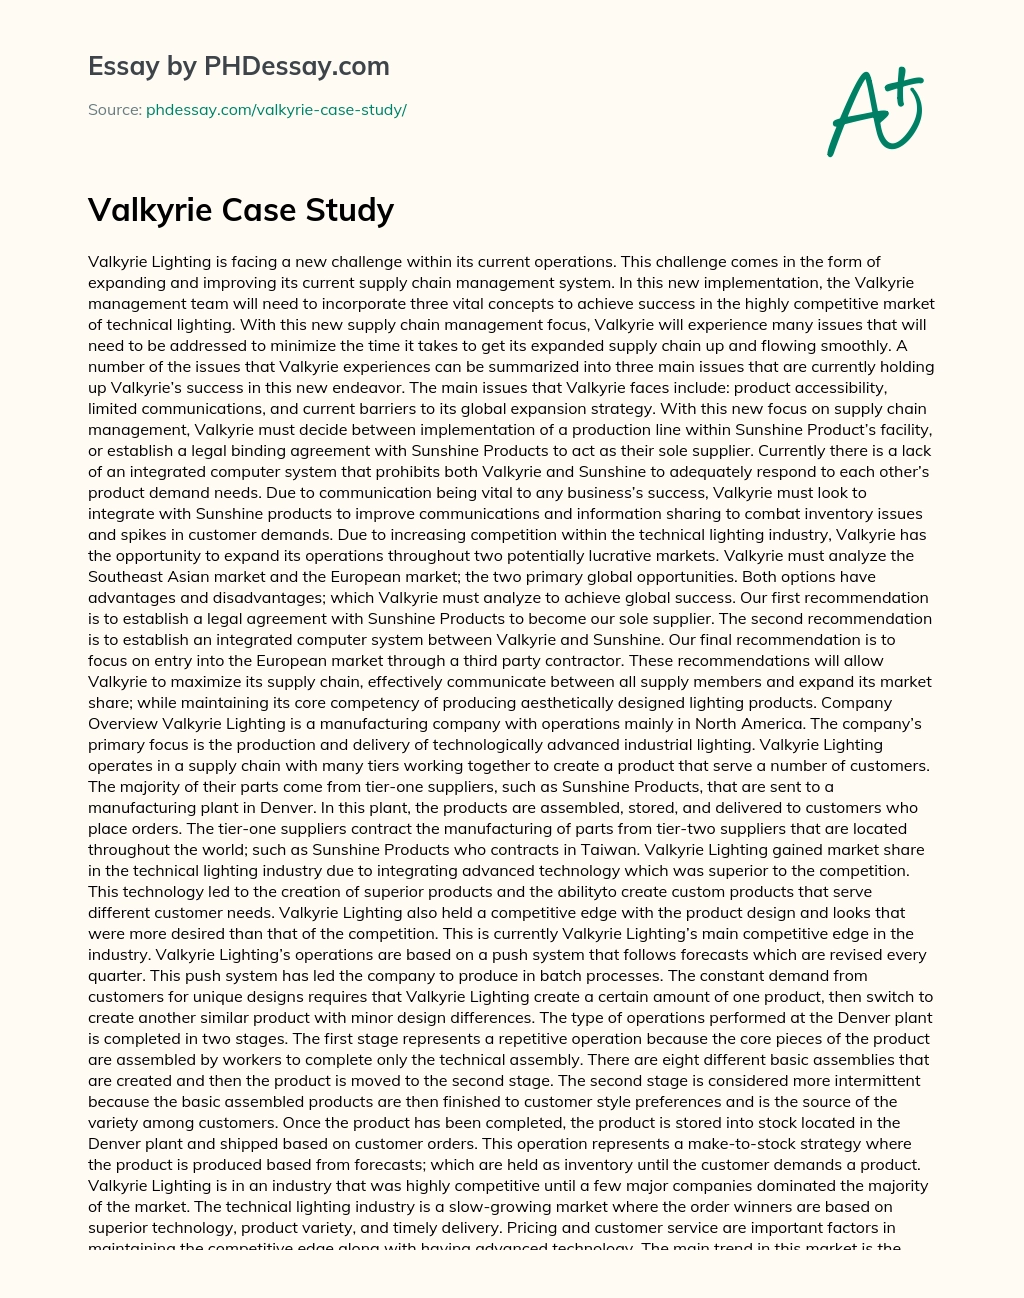 Valkyrie Case Study essay